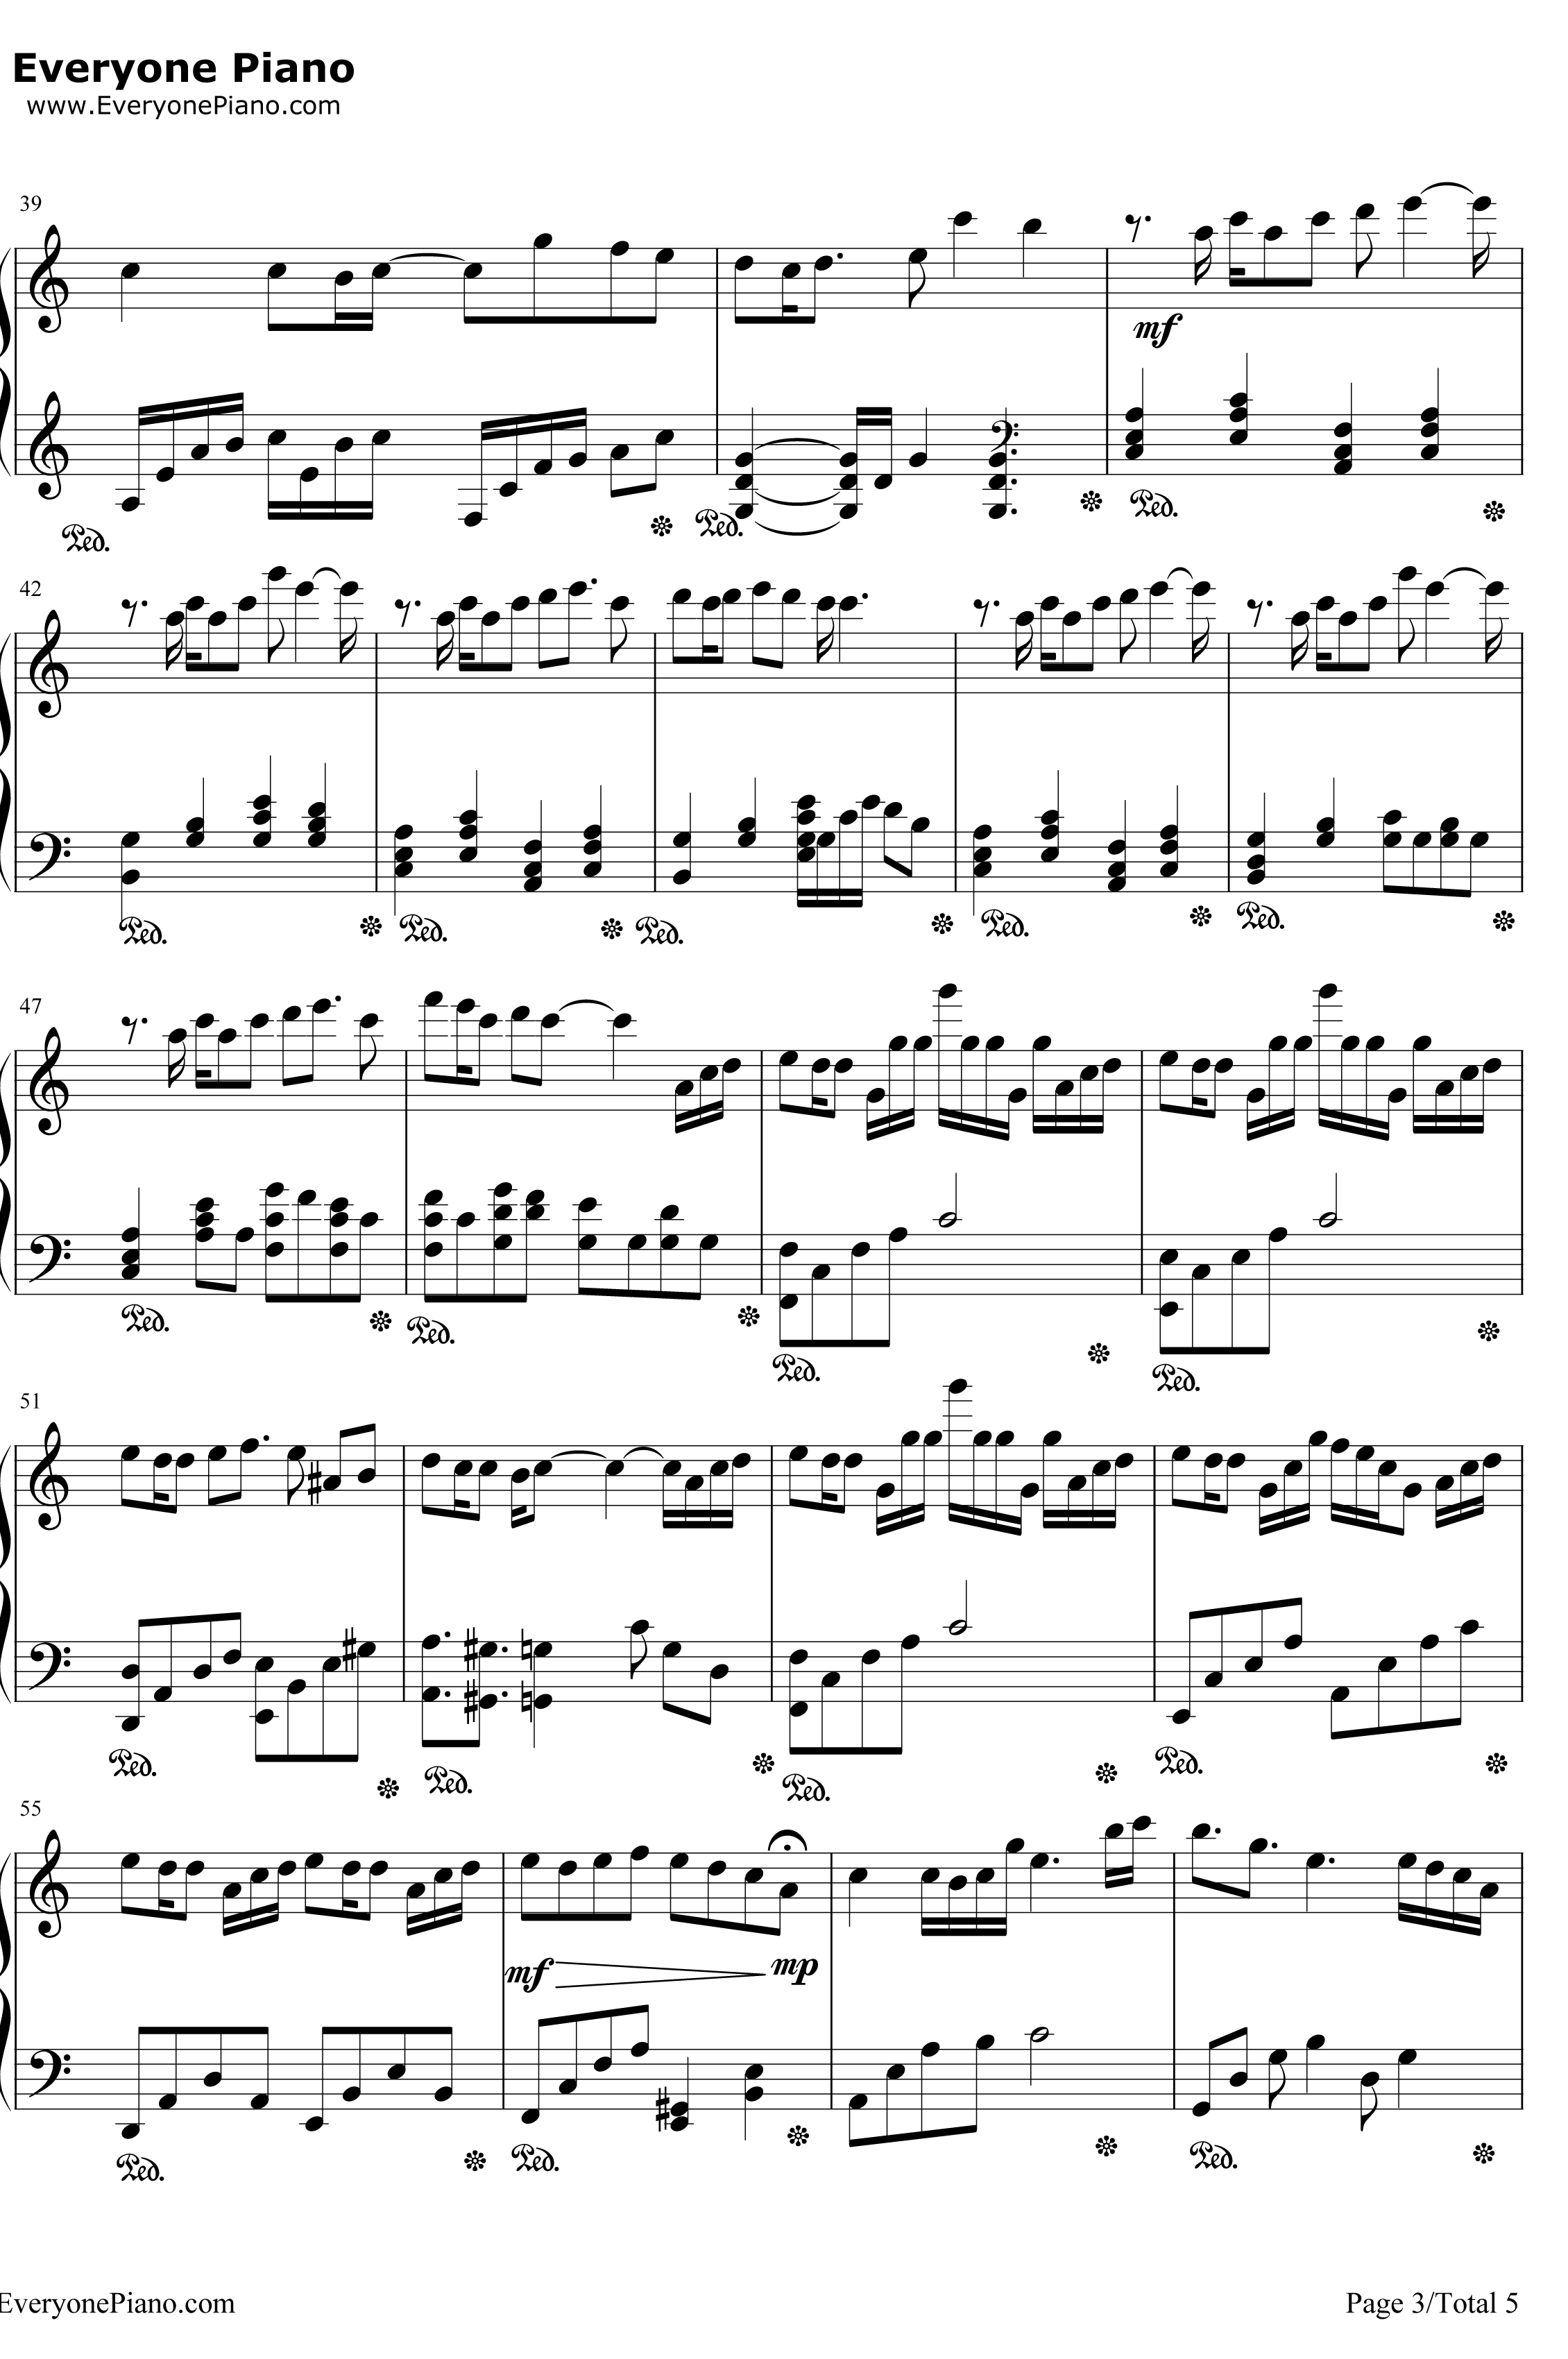 からくりピエロ钢琴谱-初音ミク3